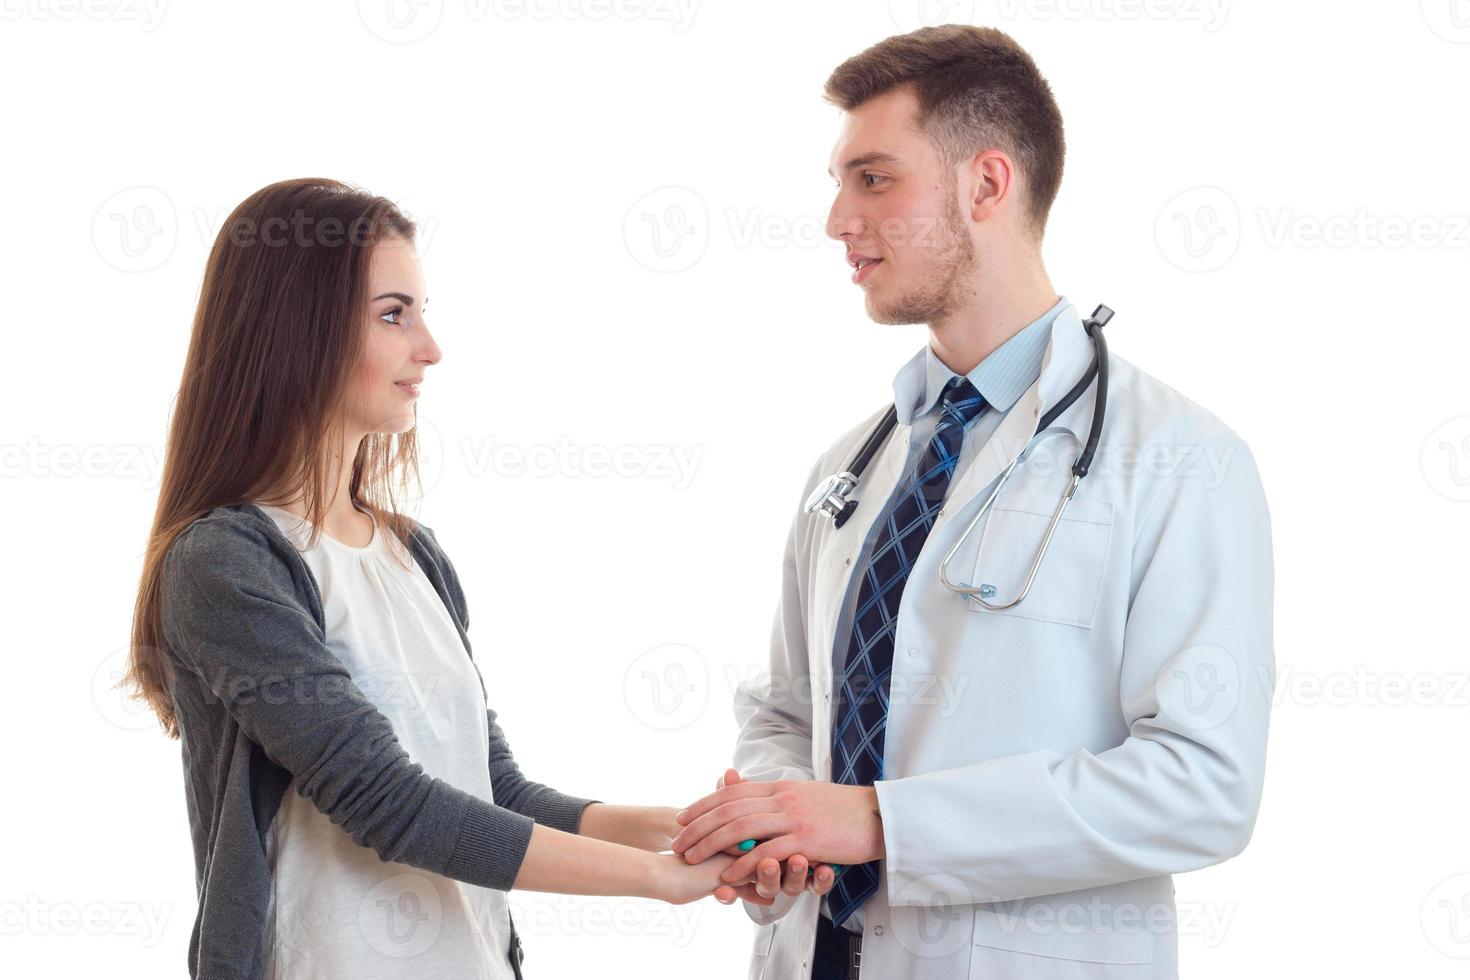 jovem médico segurando a mão de um paciente foto